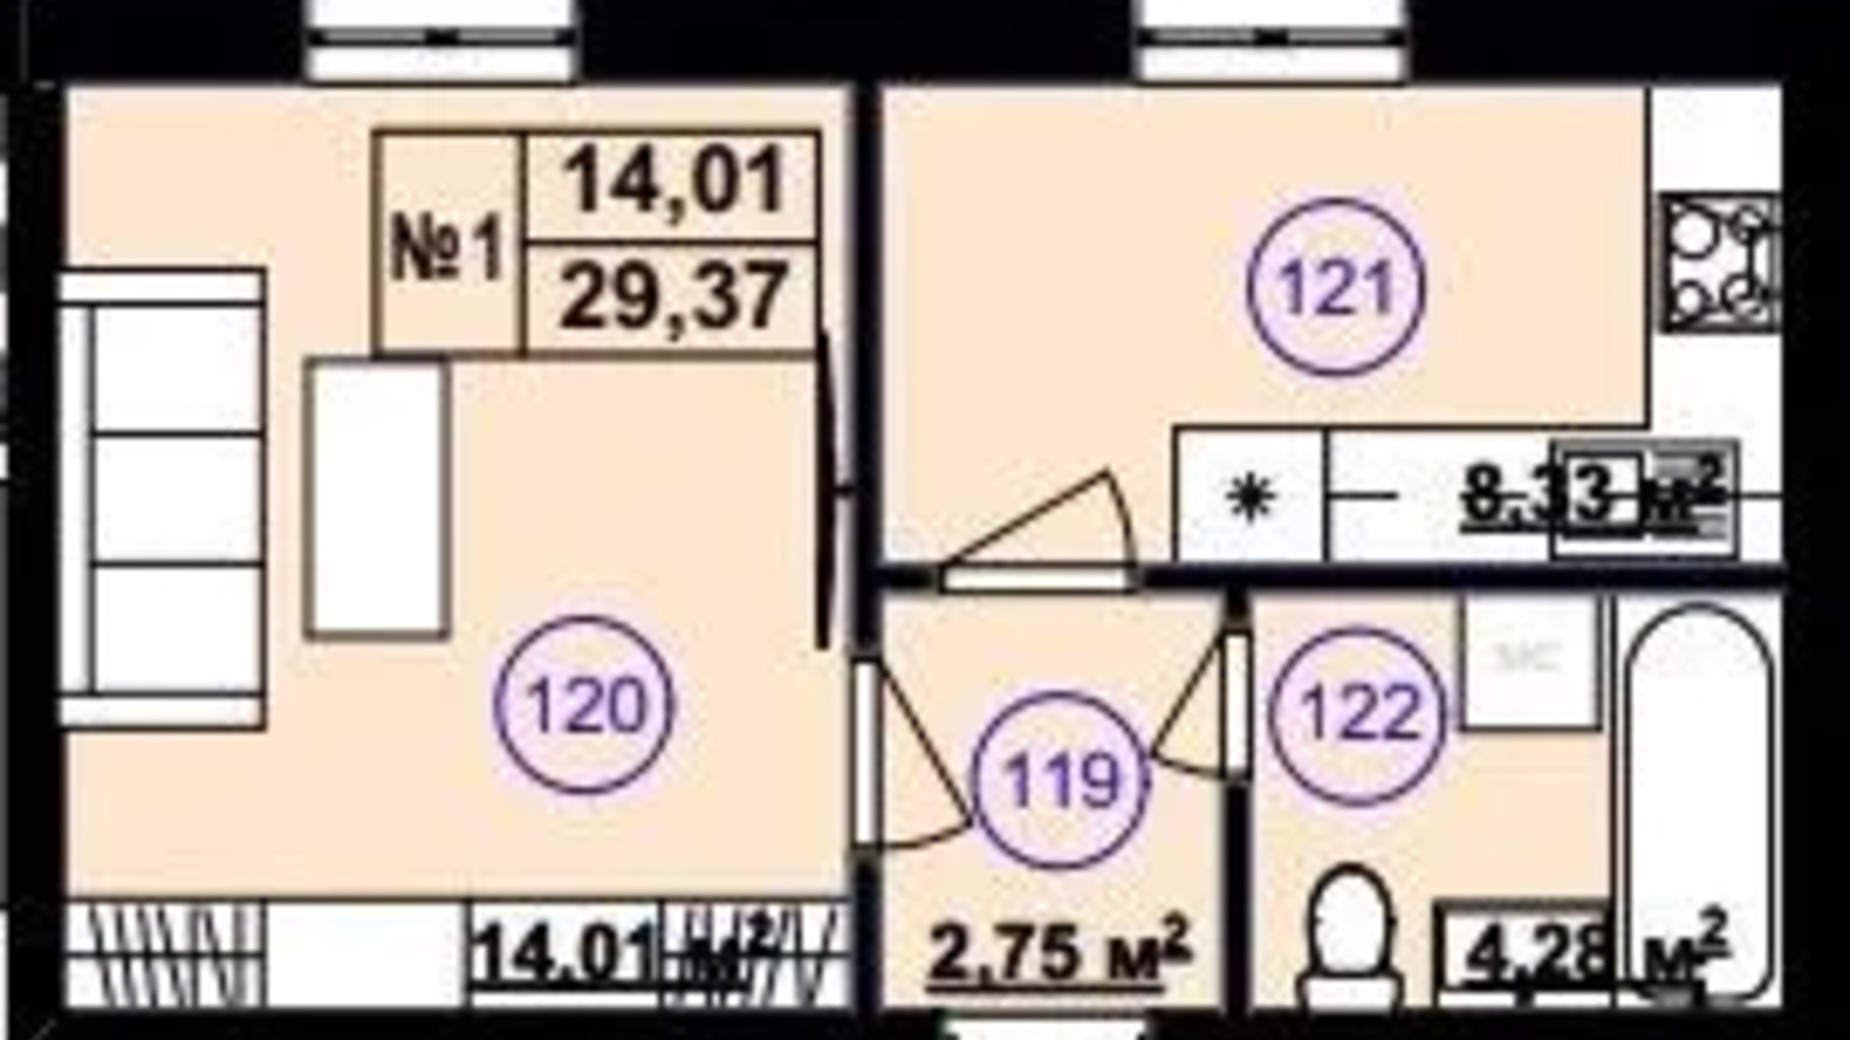 Планировка 1-комнатной квартиры в Клубный дом София 2 29.37 м², фото 617256